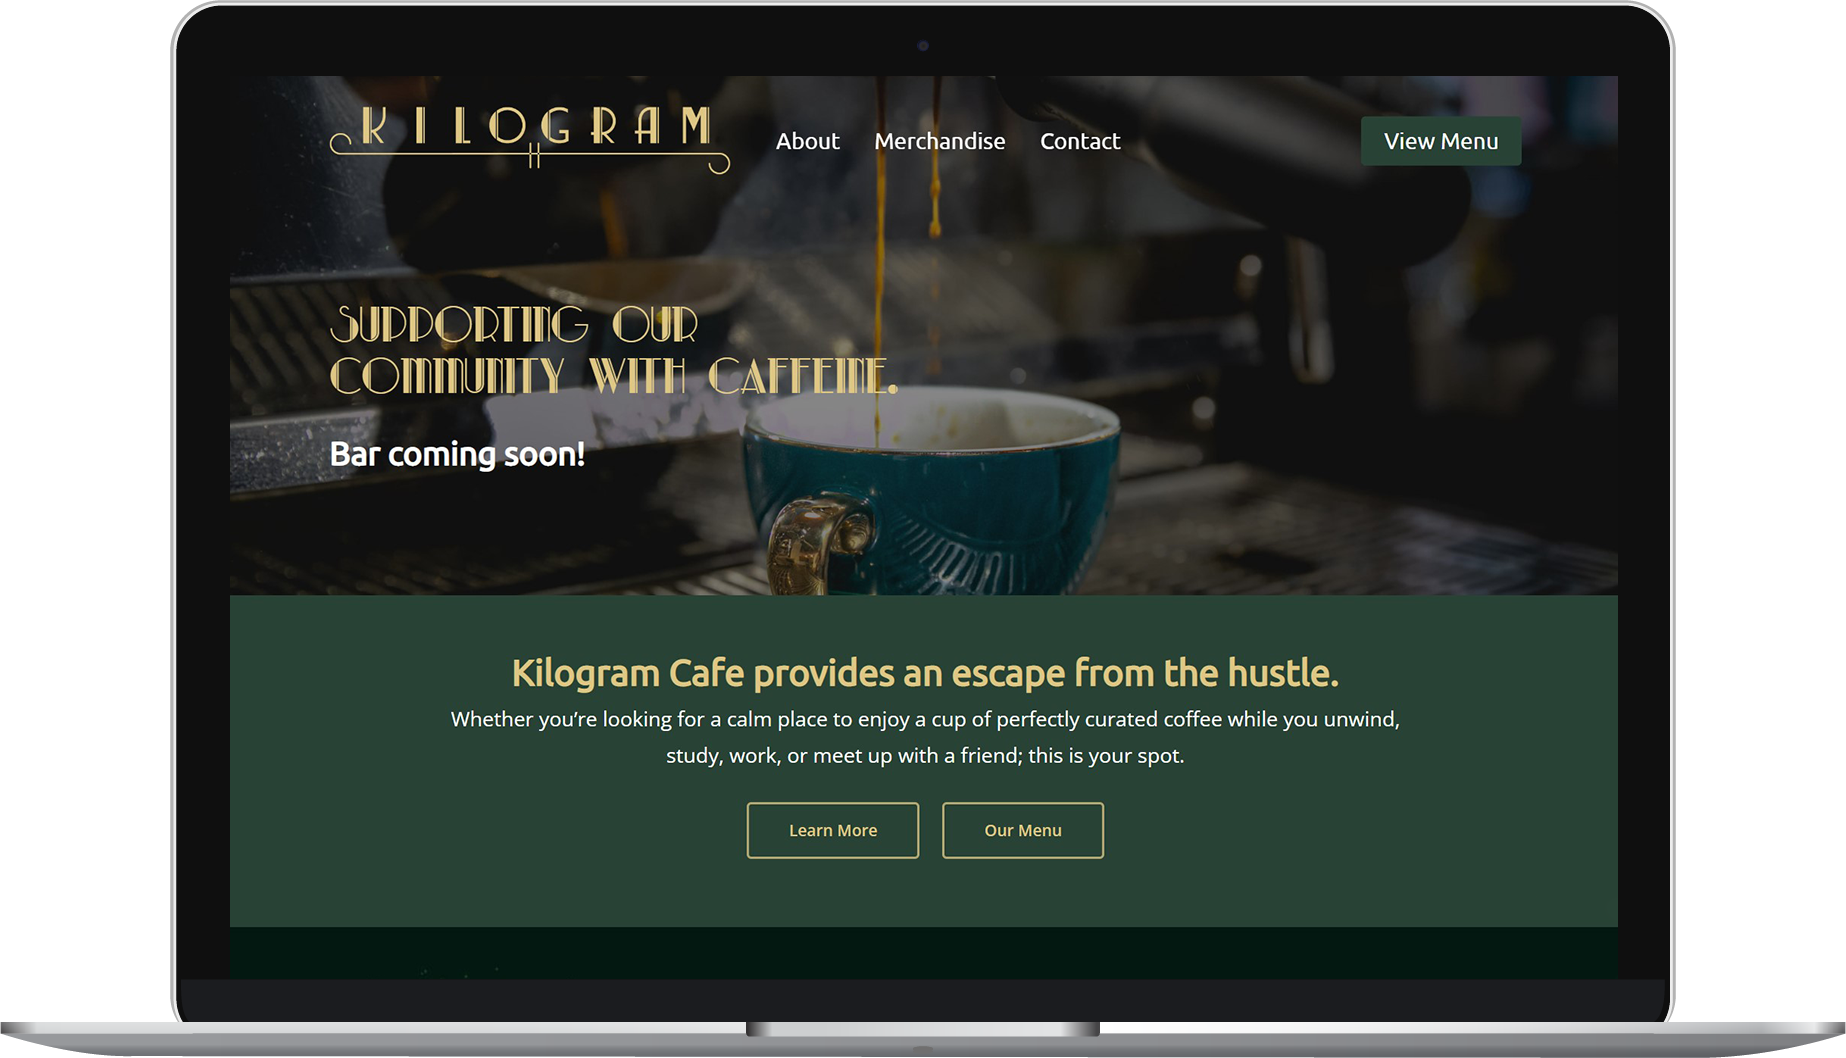 Kilogram Cafe website homepage on laptop.